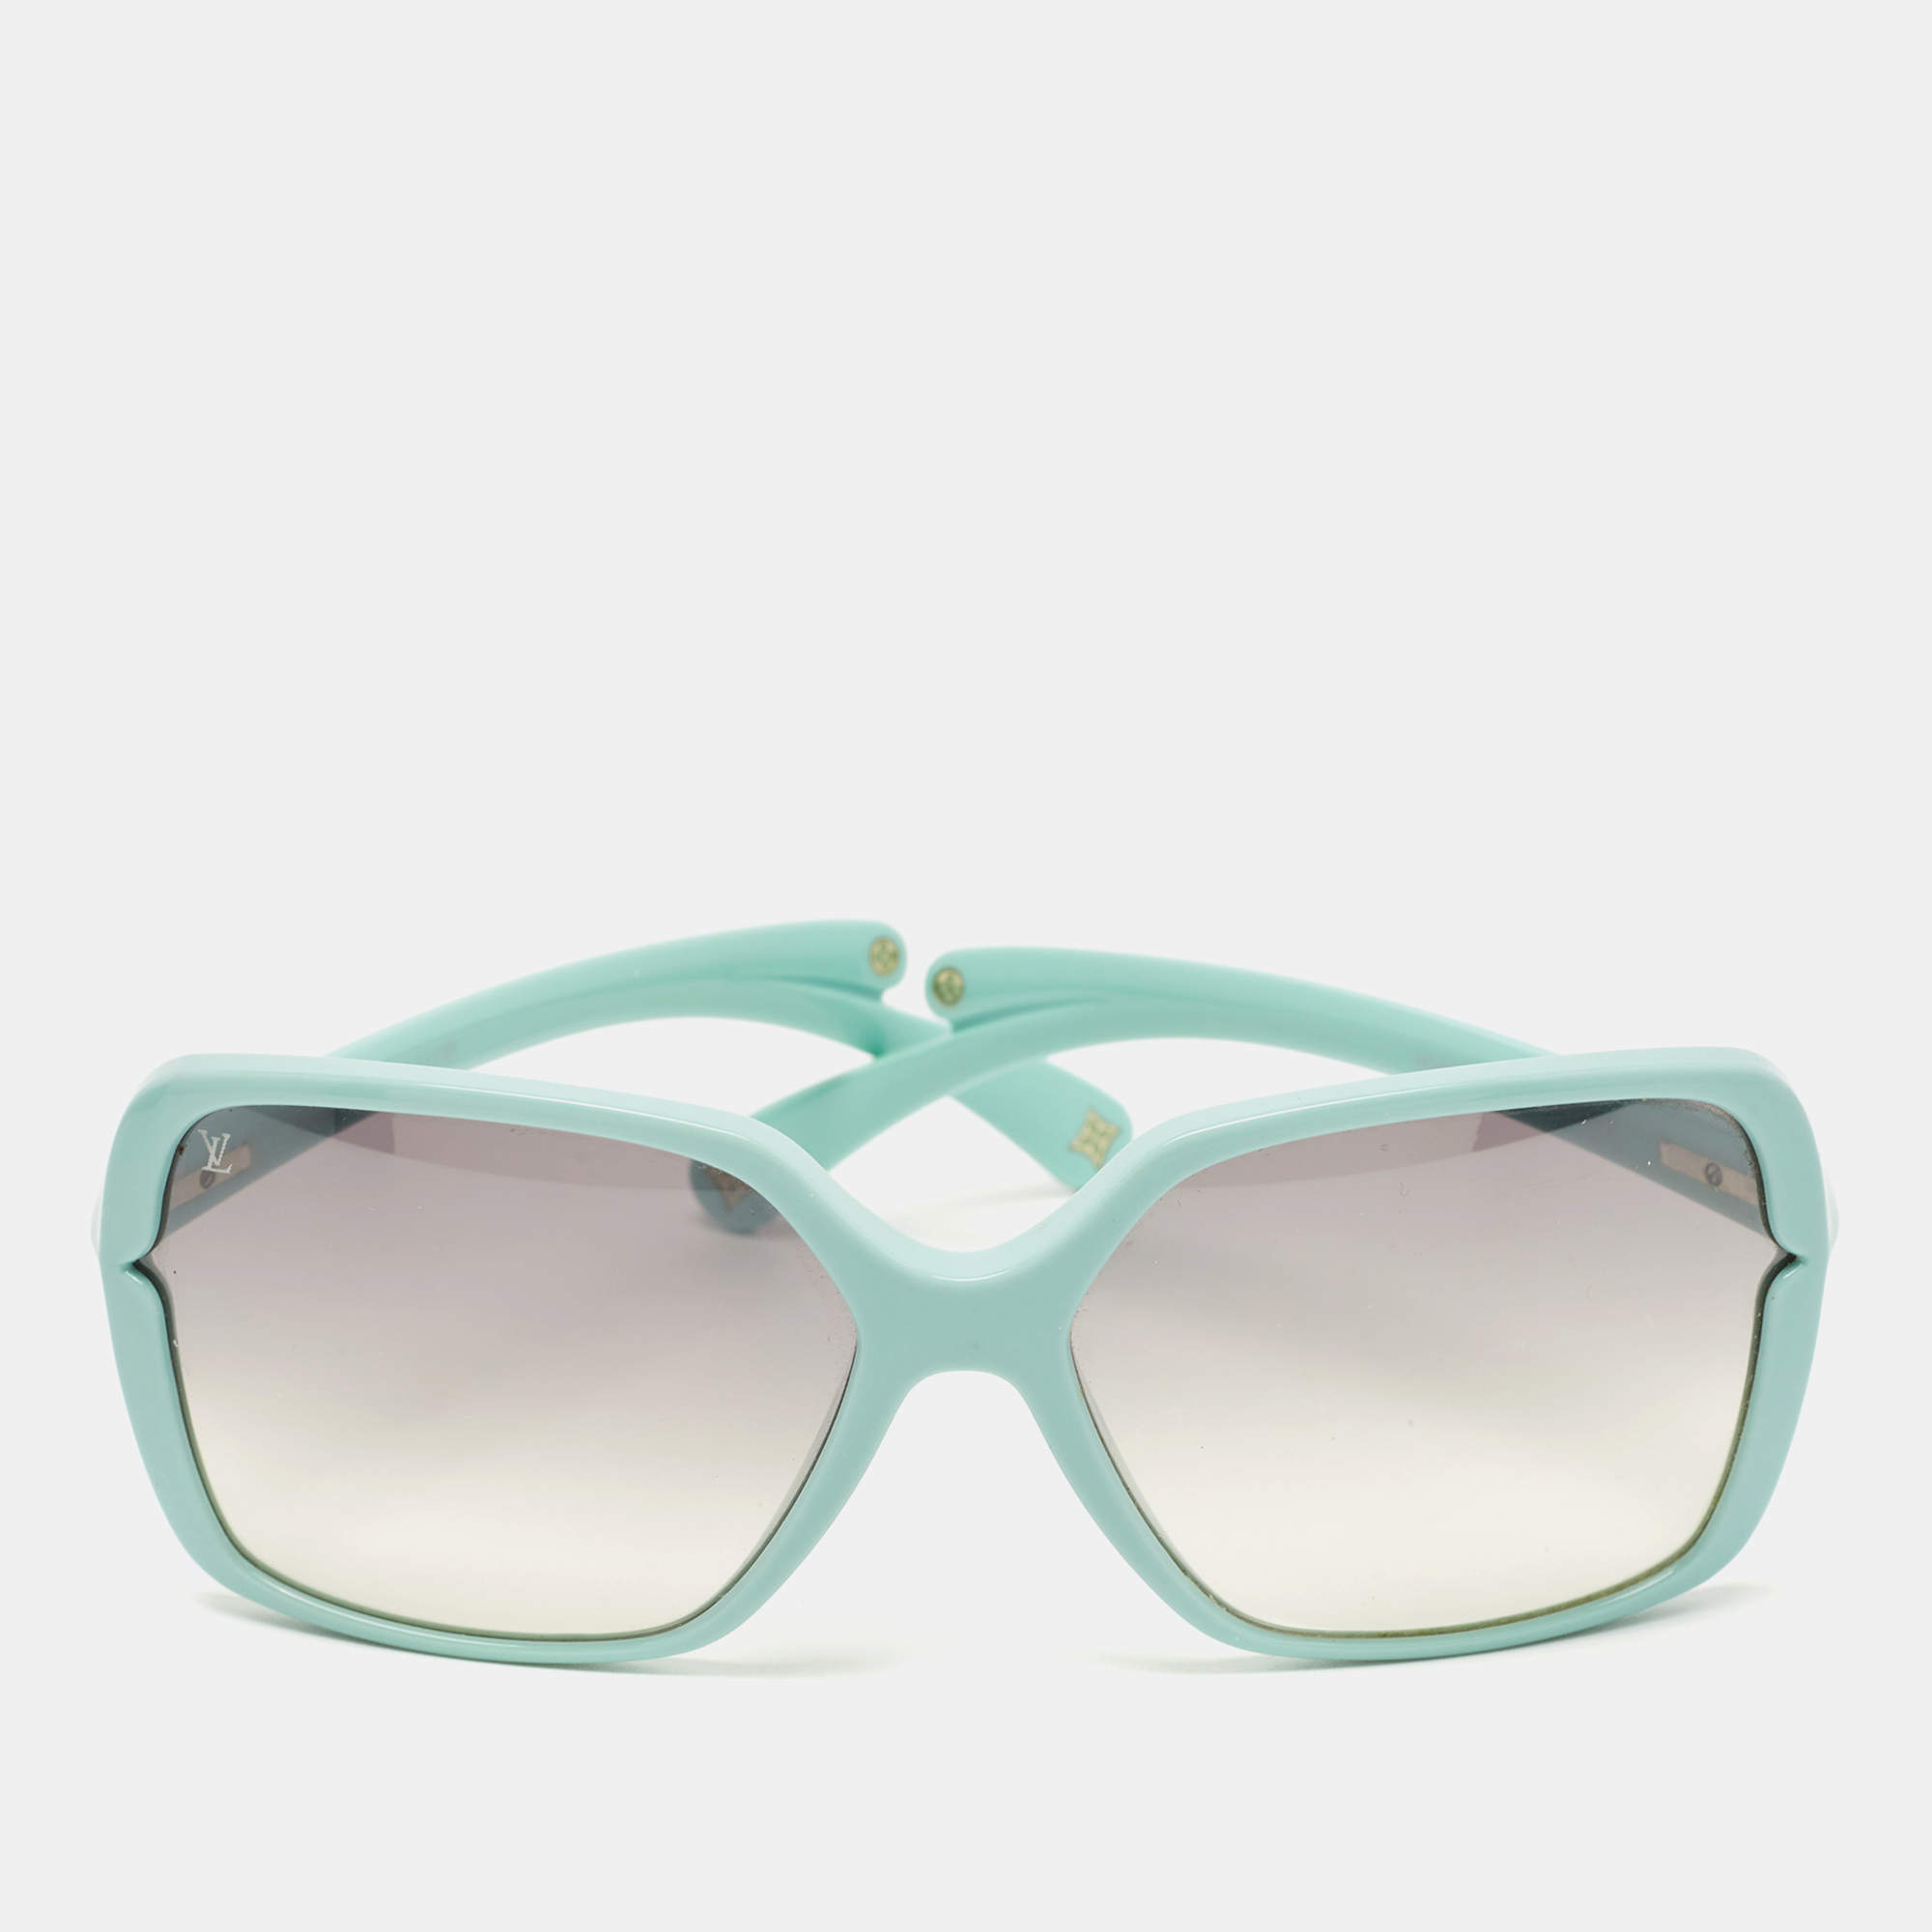 Louis Vuitton, Accessories, Like New Authentic Louis Vuitton Sunglasses